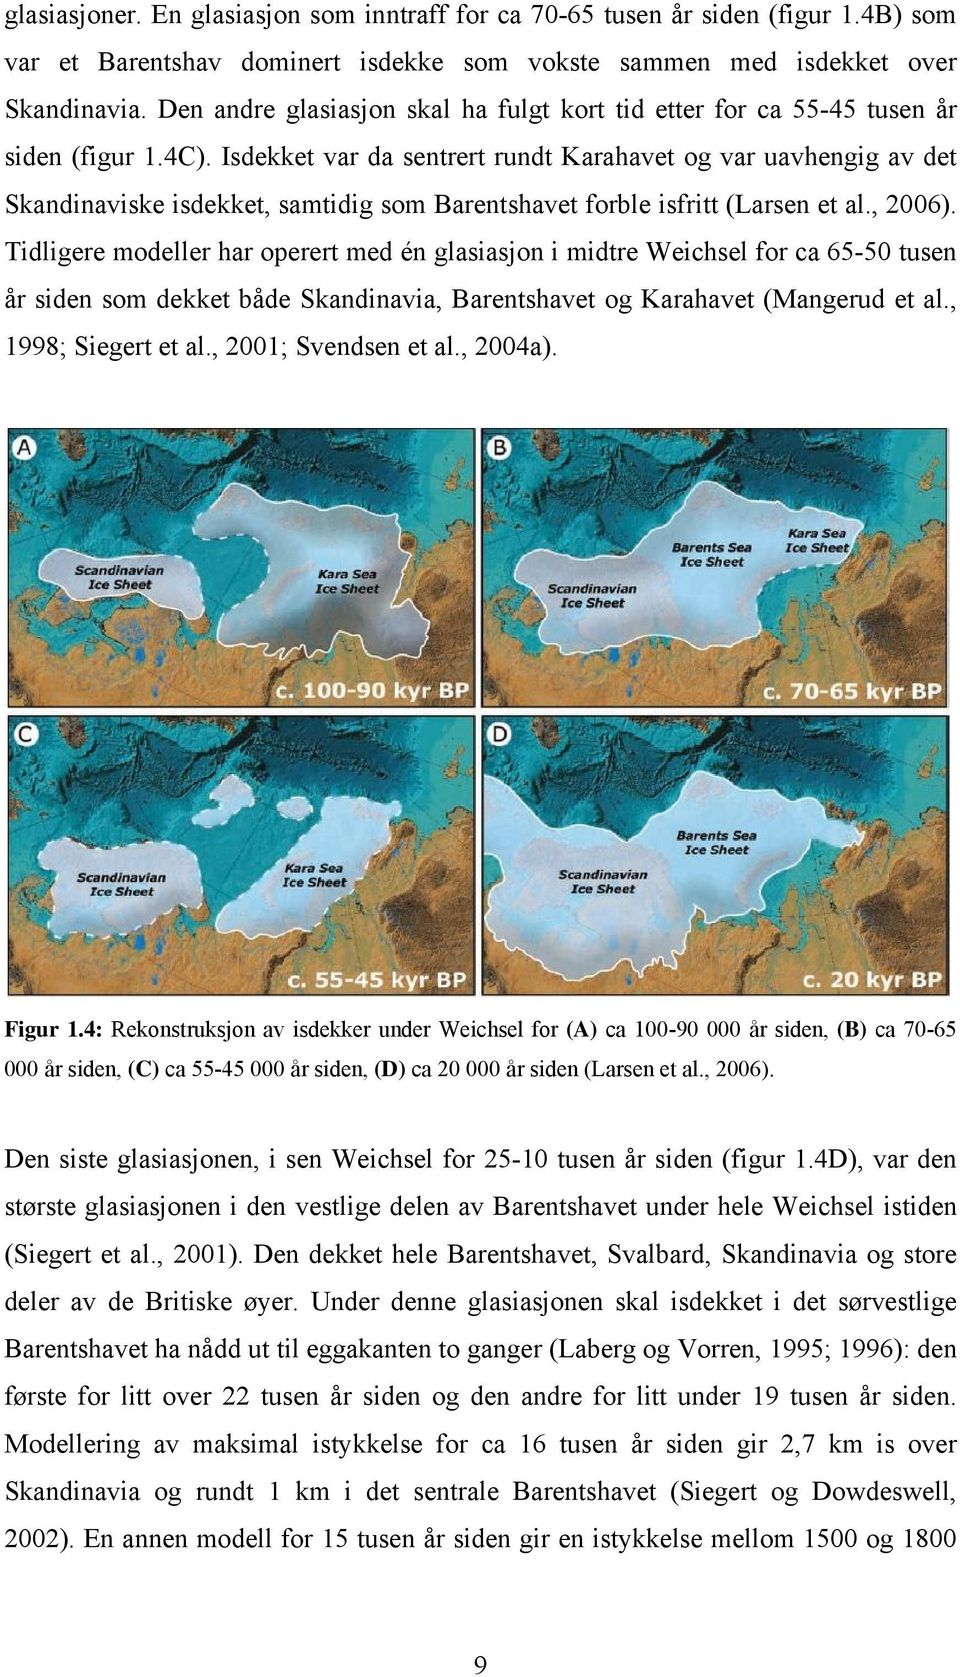 Isdekket var da sentrert rundt Karahavet og var uavhengig av det Skandinaviske isdekket, samtidig som Barentshavet forble isfritt (Larsen et al., 2006).